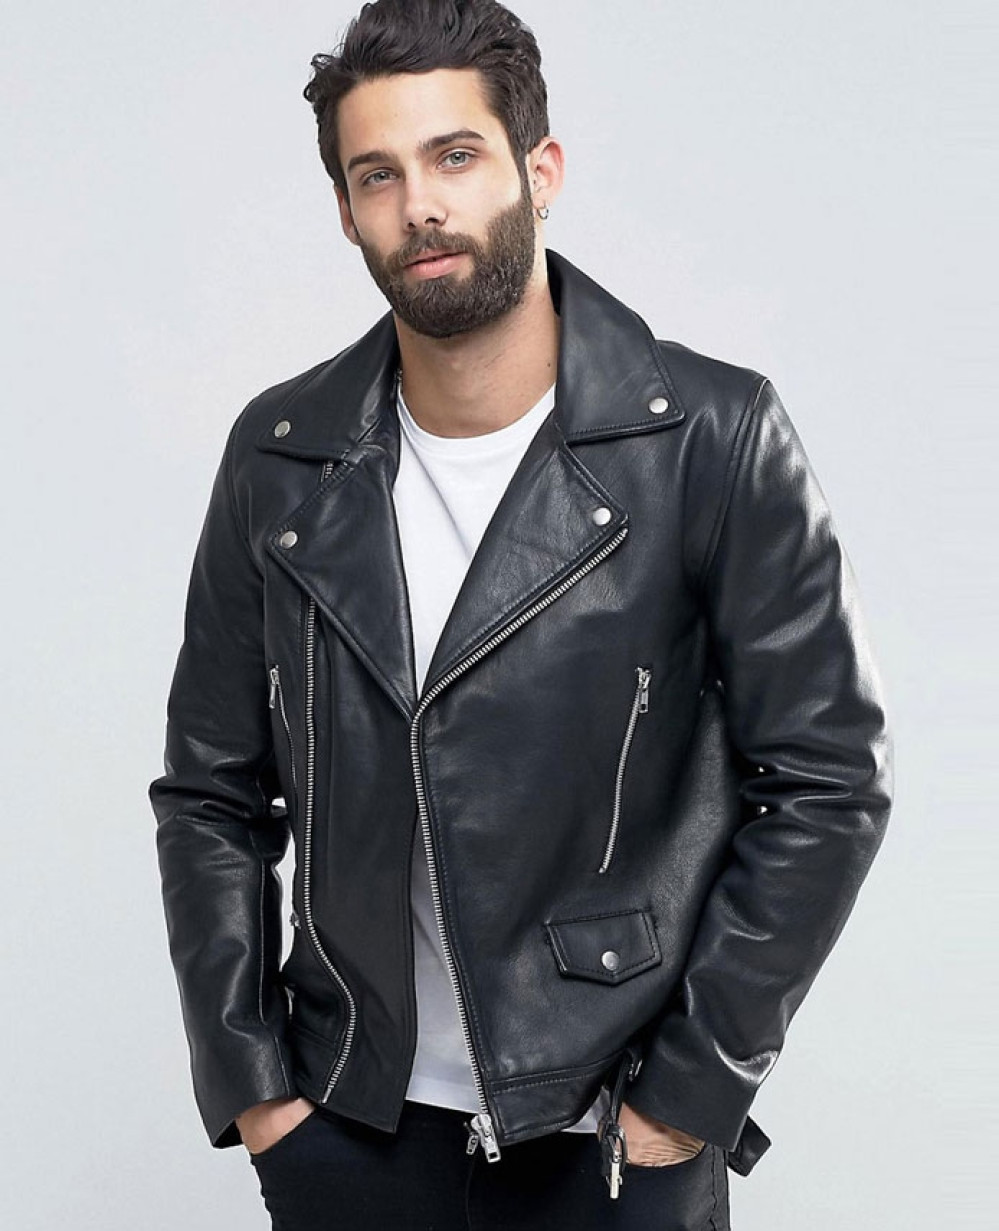 Куртка с поясом мужская. Biker Leather Jacket ASOS man. Байкерская кожаные куртки на Асос мужские. Кожаная куртка мужская байкерская. Куртка косуха мужская.